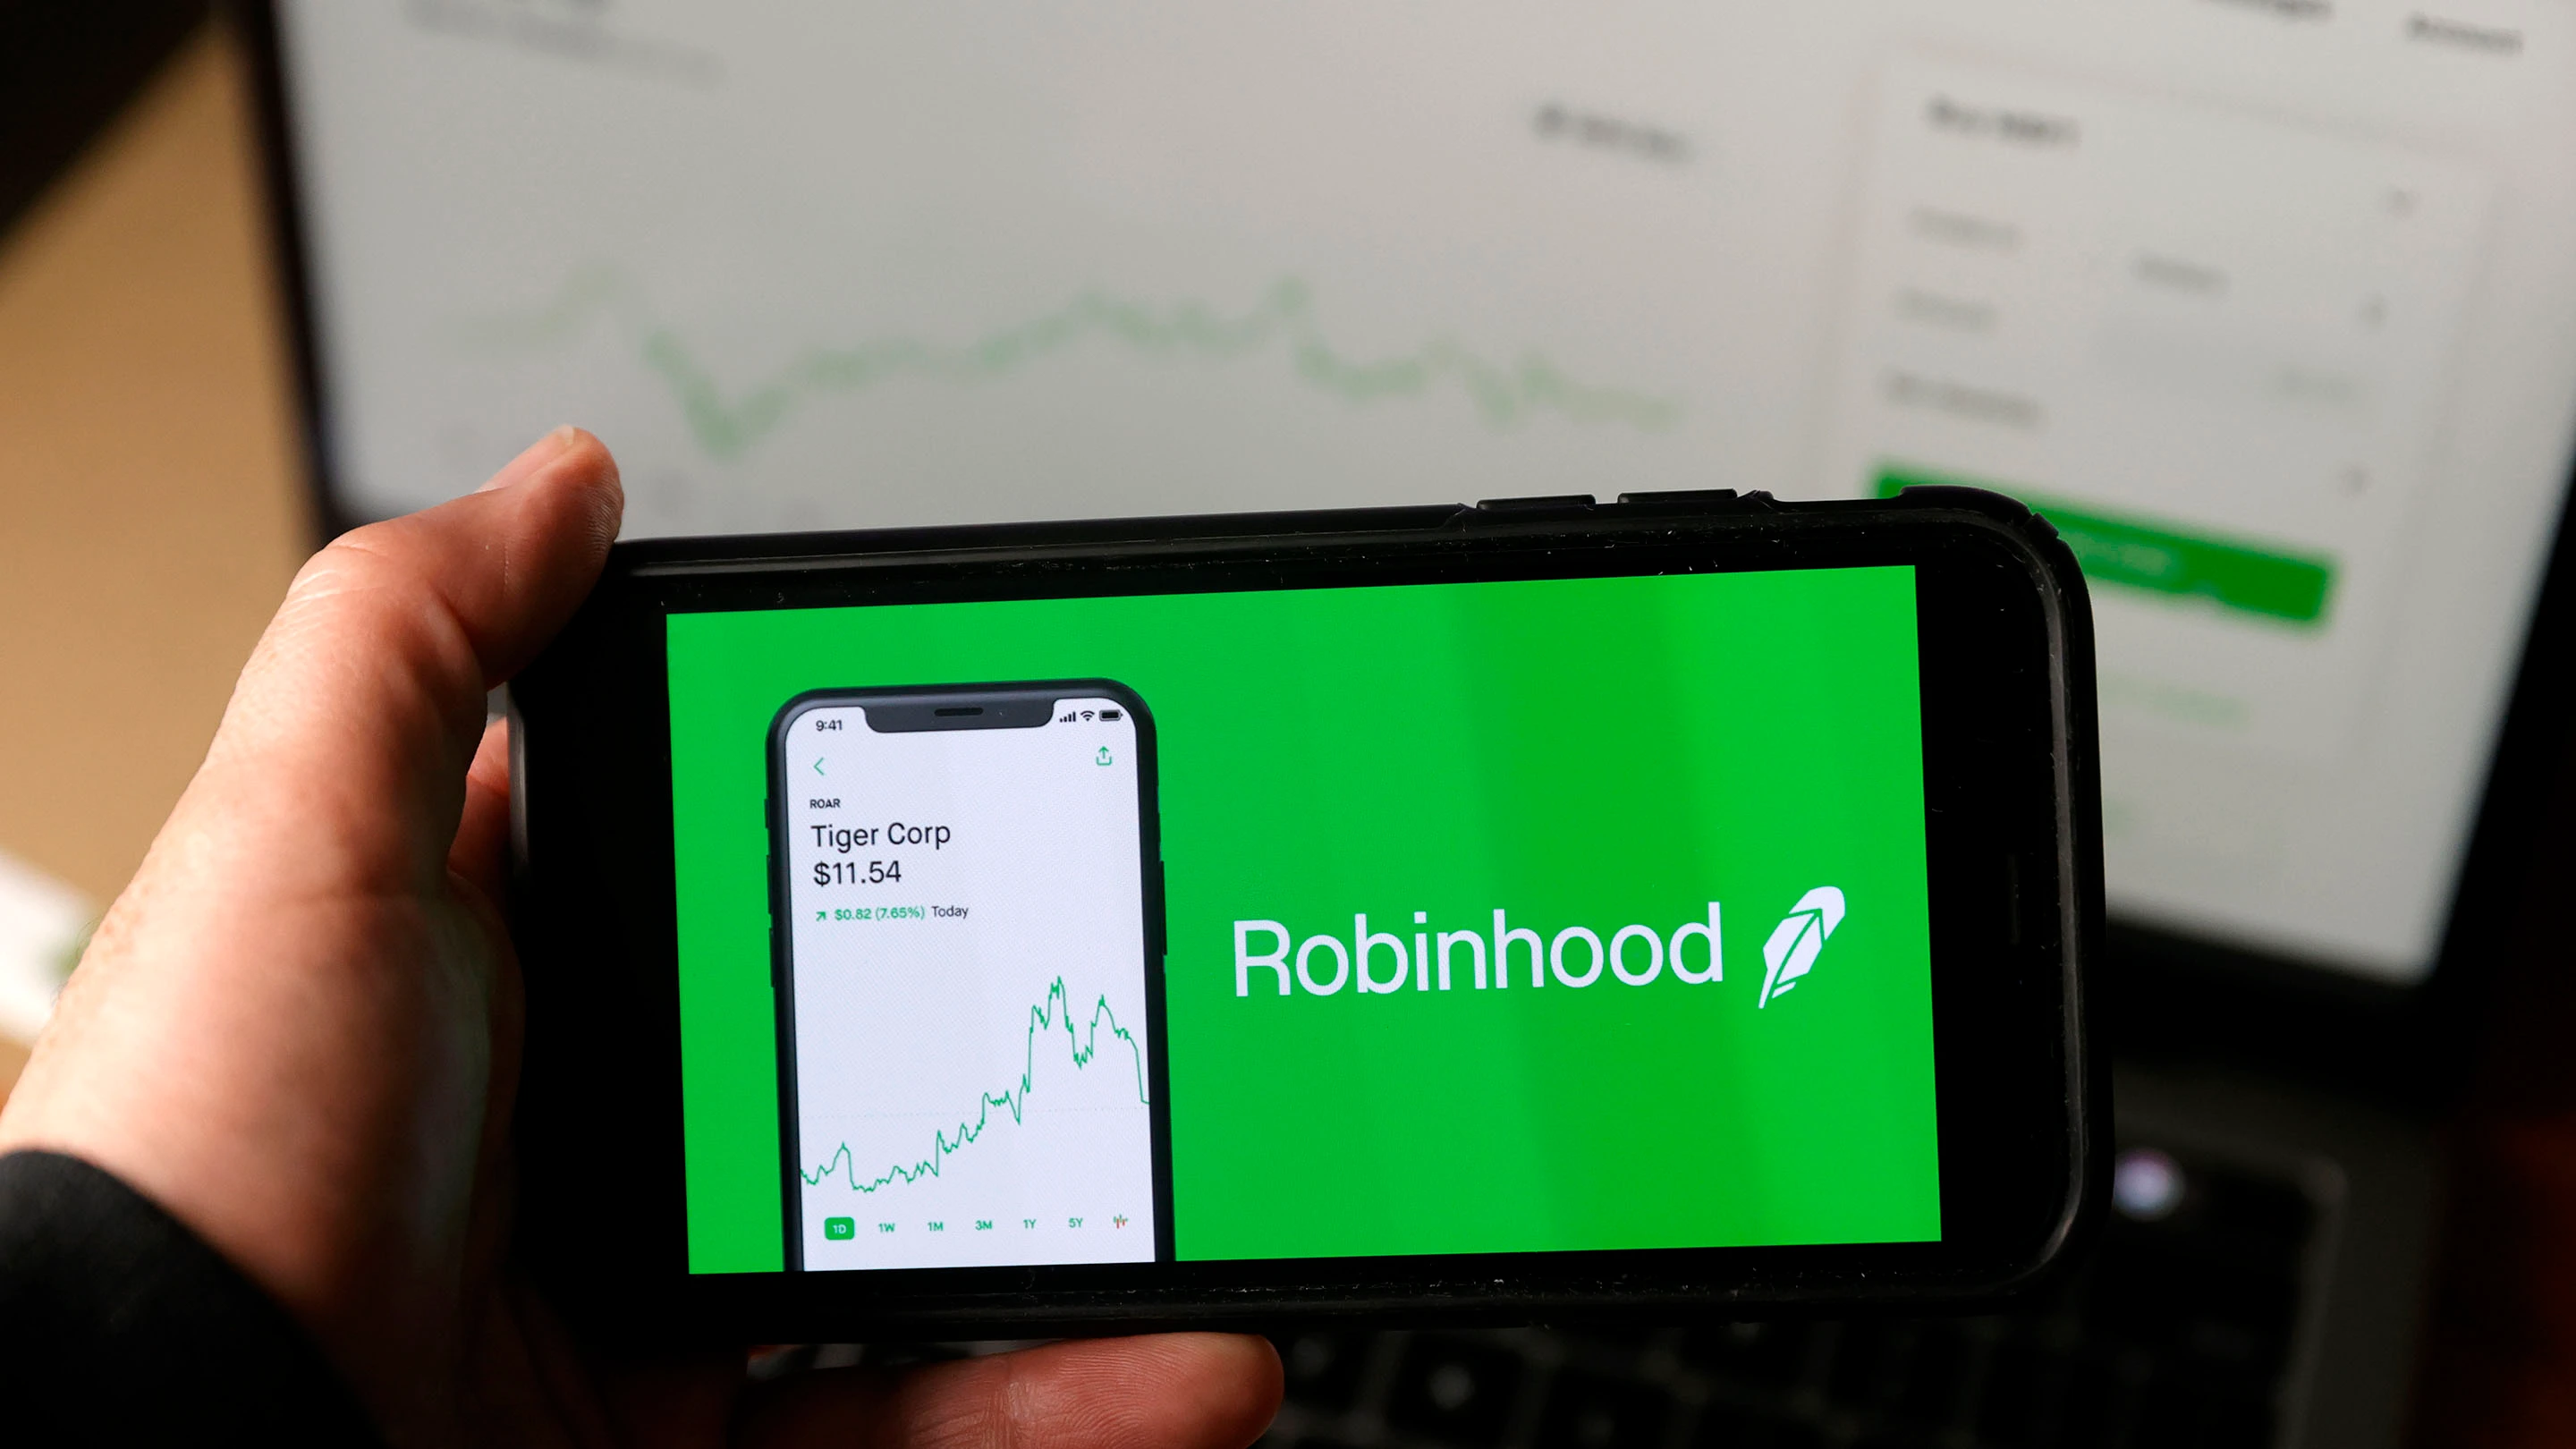 Robinhood "đấu tranh" tháng 4 khi khối lượng giao dịch giảm